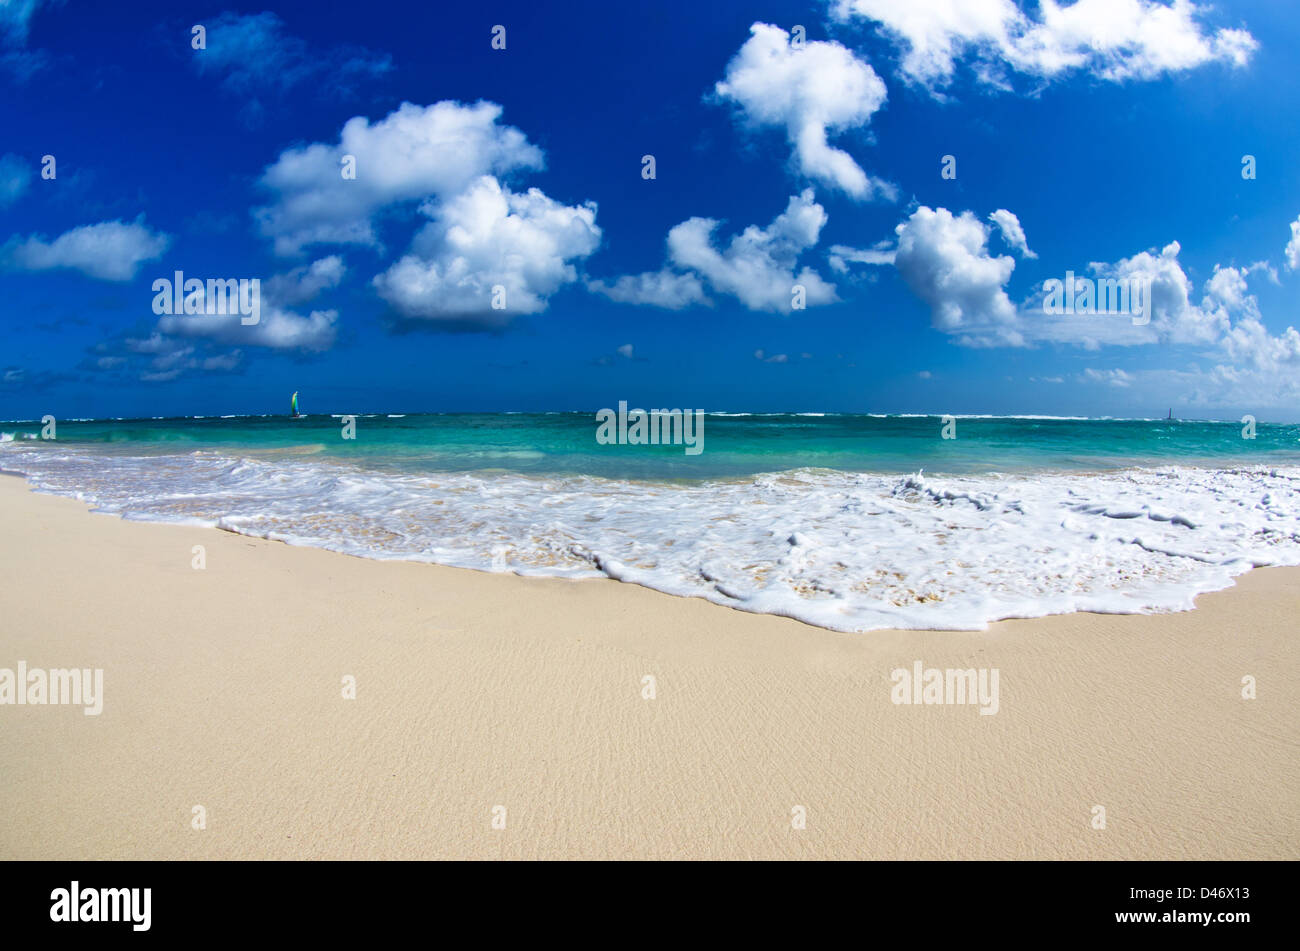 beautiful blue caribbean sea beach Stock Photo